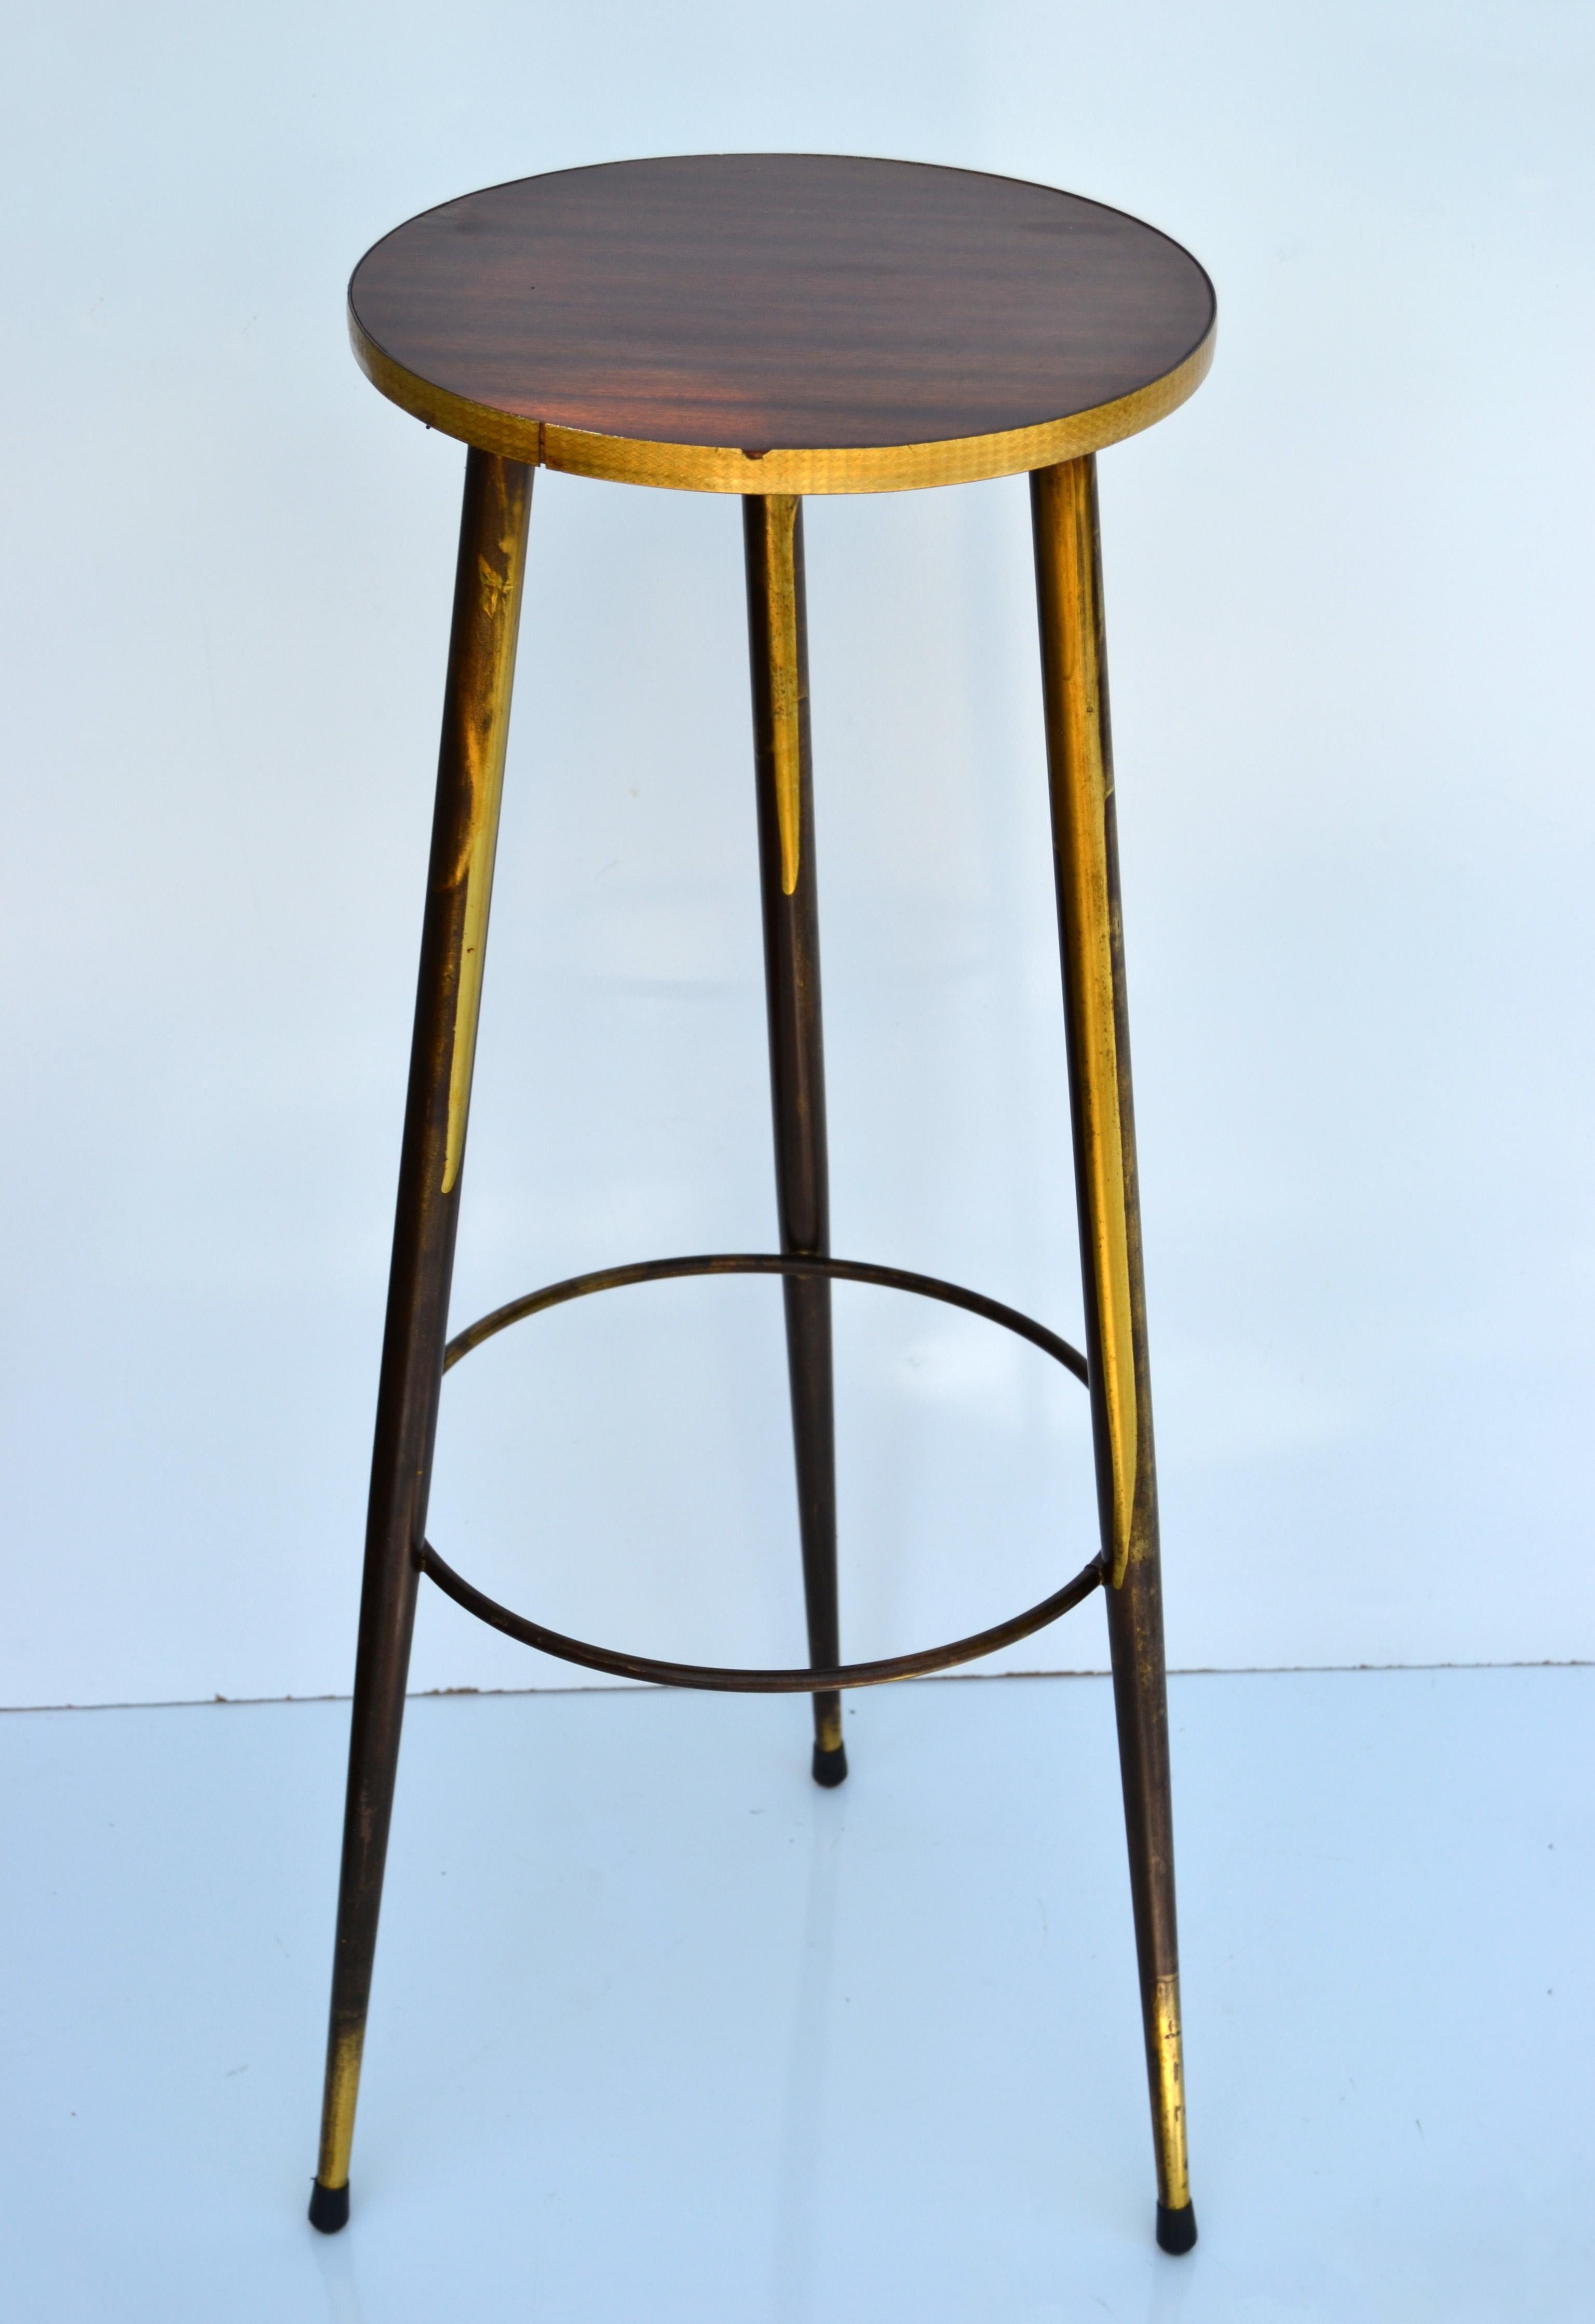 Moderner dreibeiniger runder Bronzetisch aus der Jahrhundertmitte mit Laminatplatte und dekorativen Messingbändern.
In der ursprünglichen Patina belassen und gegen Aufpreis auf Hochglanz poliert. 
Die Messingbanderole hat zwei Chips.
Die